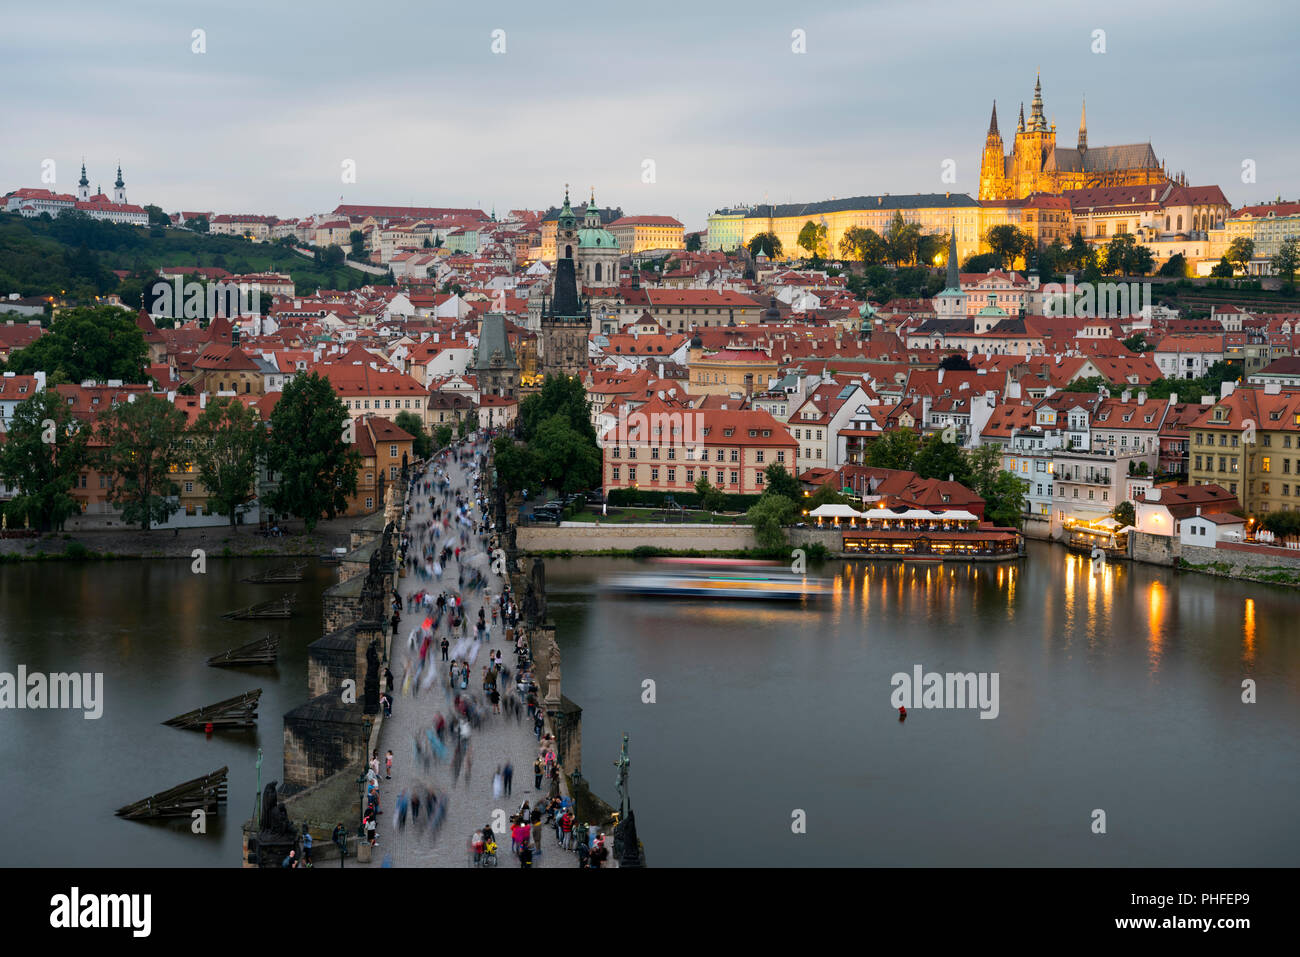 Le Pont Charles et le château de Prague (Hradcany) avec la cathédrale Saint-Guy et l'église Saint Georges, Prague, République tchèque. Banque D'Images